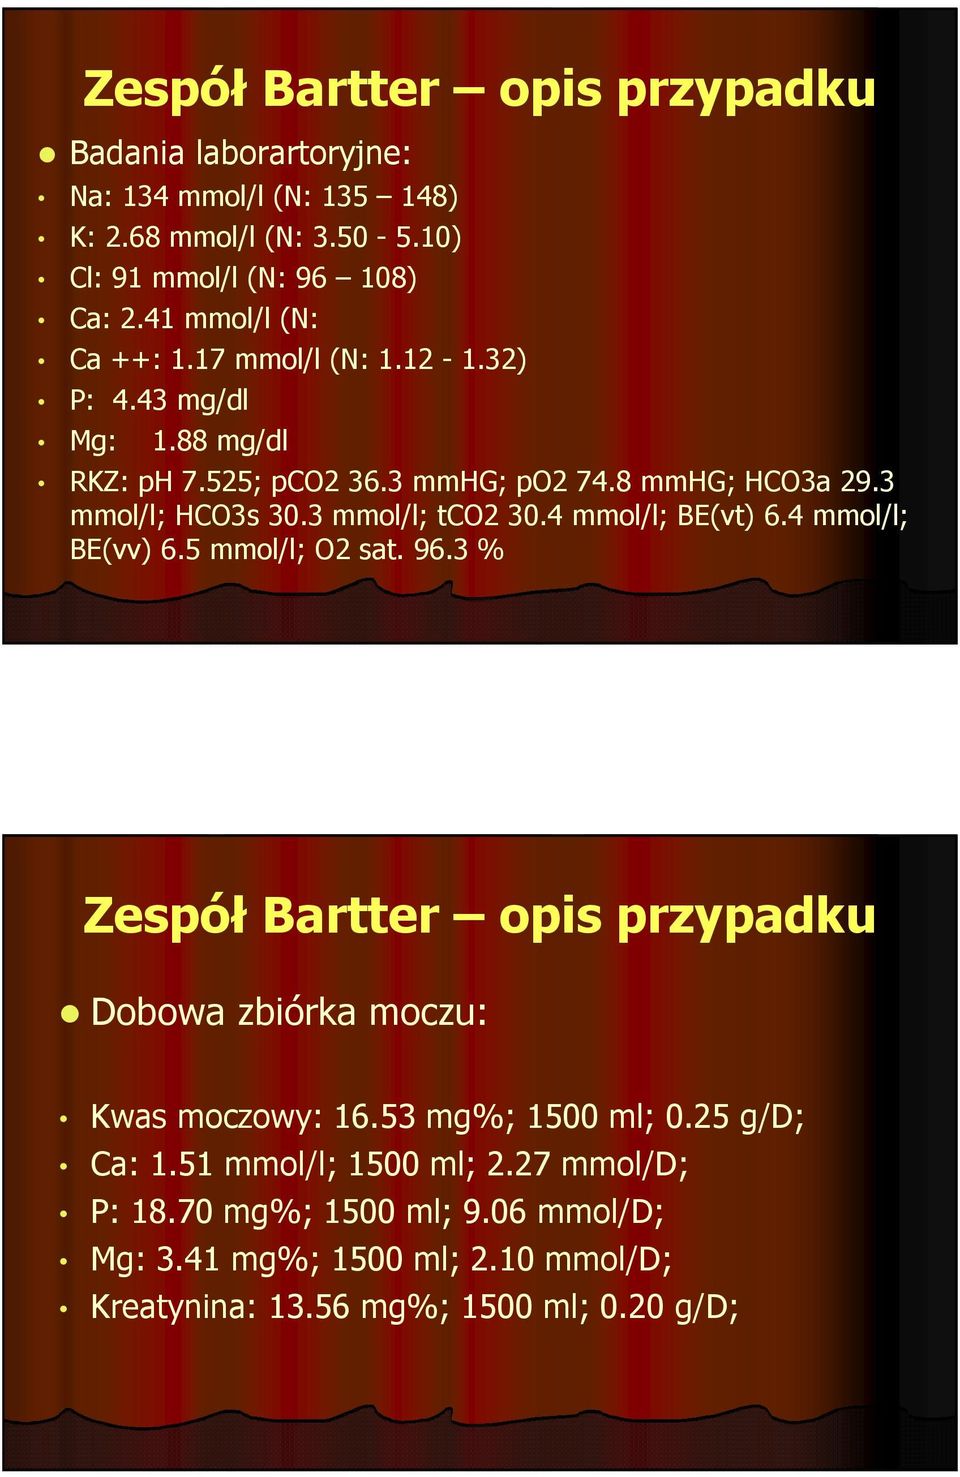 3 mmol/l; tco2 30.4 mmol/l; BE(vt) 6.4 mmol/l; BE(vv) 6.5 mmol/l; O2 sat. 96.3 % Zespół Bartter opis przypadku Dobowa zbiórka moczu: Kwas moczowy: 16.